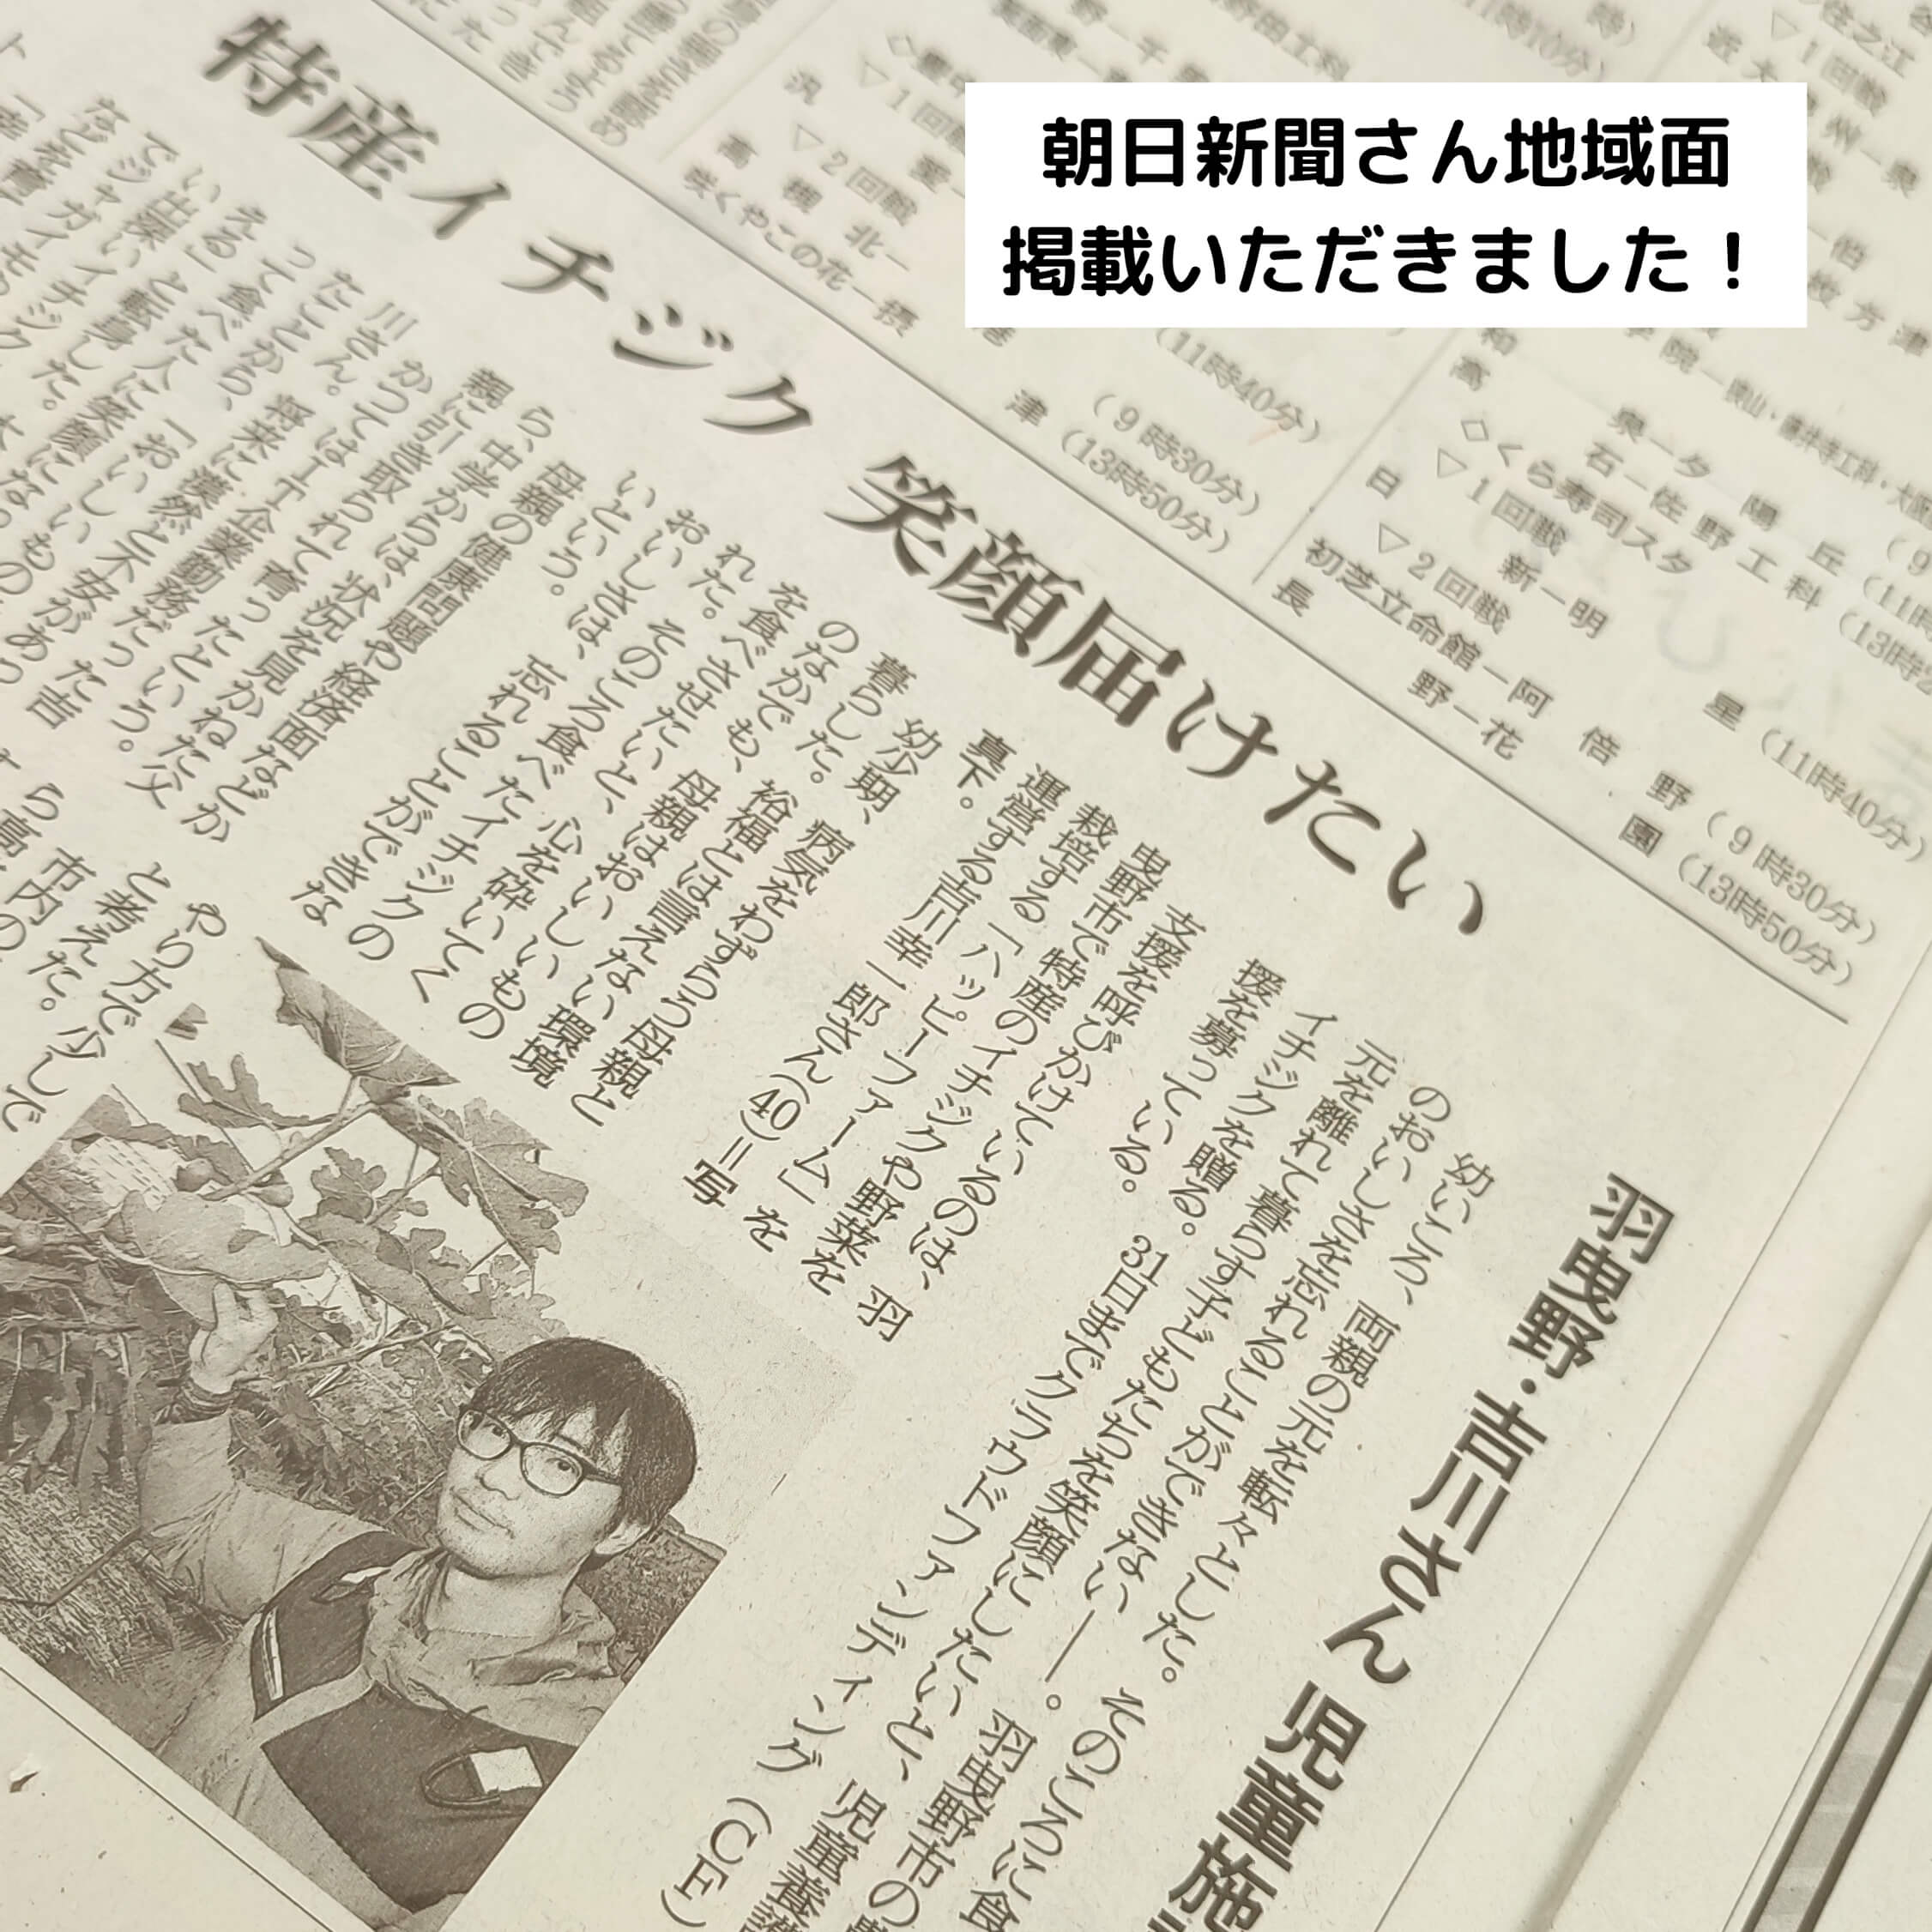 朝日新聞さんに子どもたちへいちじくを届ける取り組みを掲載